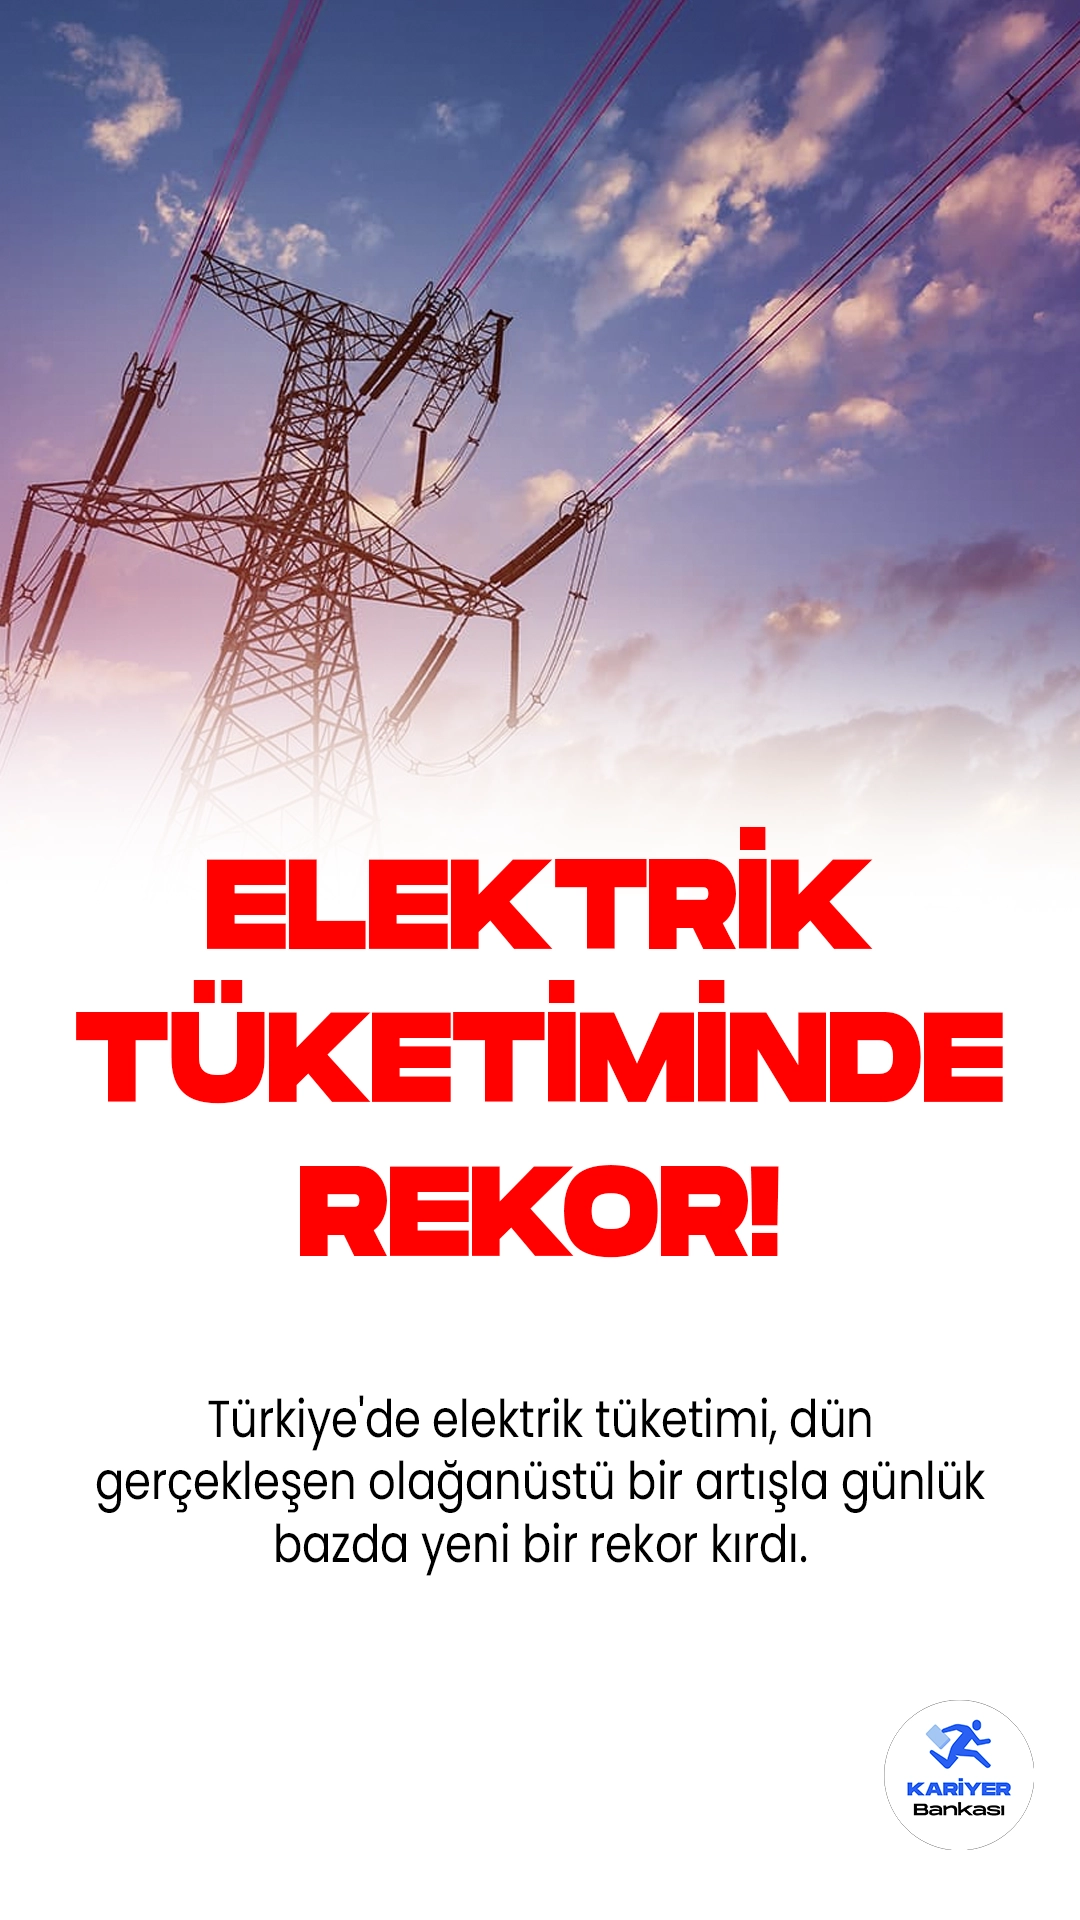 Elektrik Tüketiminde Yeni Rekor Kırıldı!Türkiye'de elektrik tüketimi, dün gerçekleşen olağanüstü bir artışla günlük bazda yeni bir rekor kırdı. Yurt genelindeki yükselen hava sıcaklıkları ve artan klima kullanımı ile tarımsal sulamalar, elektrik tüketiminde zirve değerlerin yaşanmasına neden oldu.